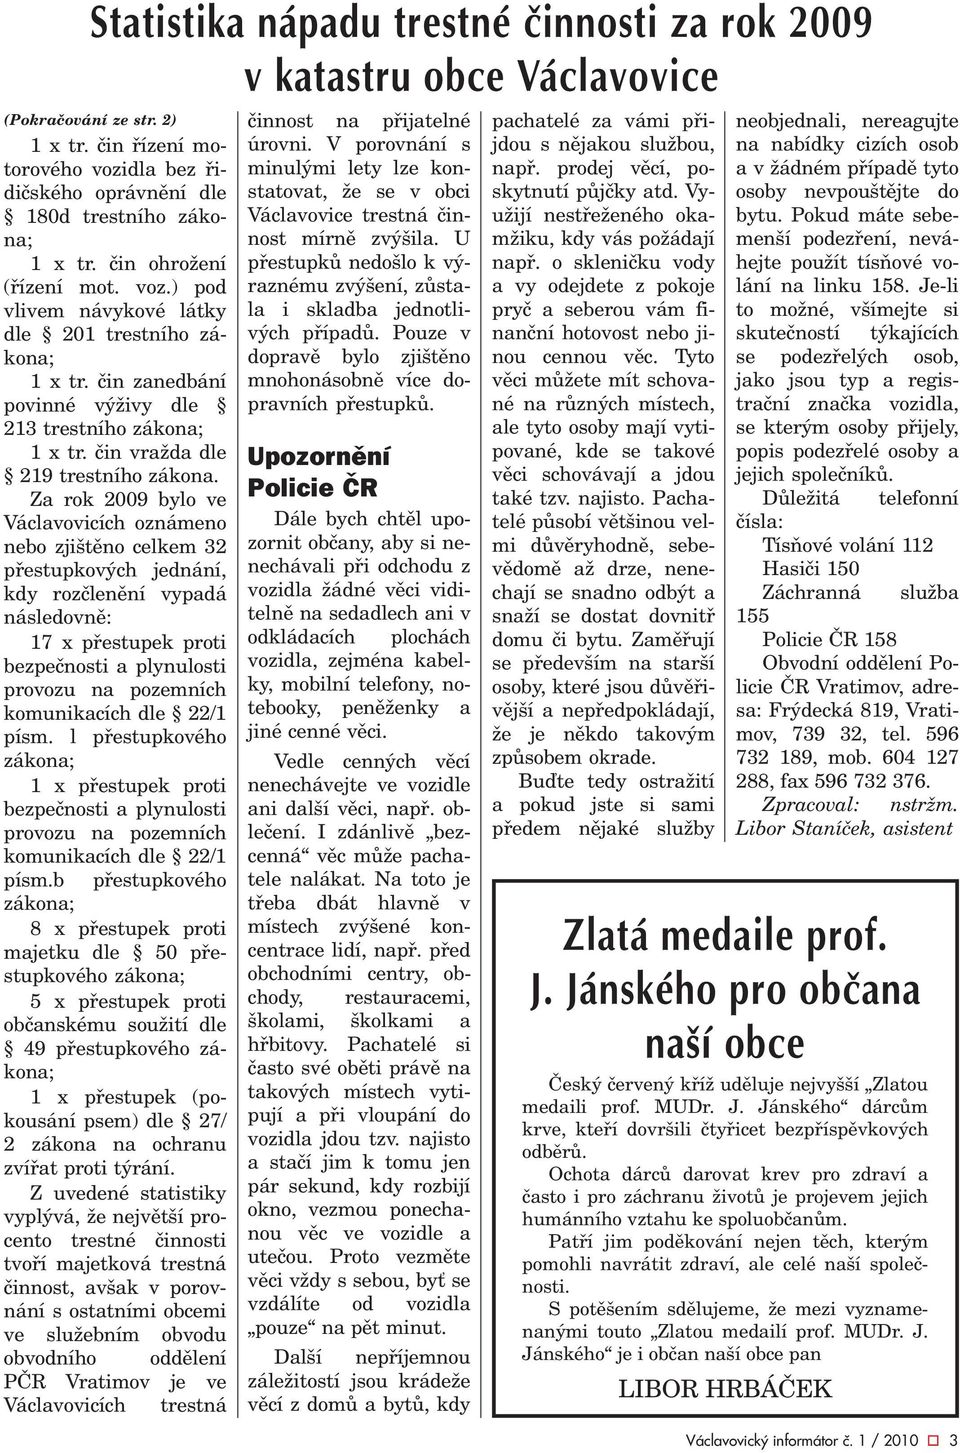 Za rok 2009 bylo ve Václavovicích oznámeno nebo zjištìno celkem 32 pøestupkových jednání, kdy rozèlenìní vypadá následovnì: 17 x pøestupek proti bezpeènosti a plynulosti provozu na pozemních